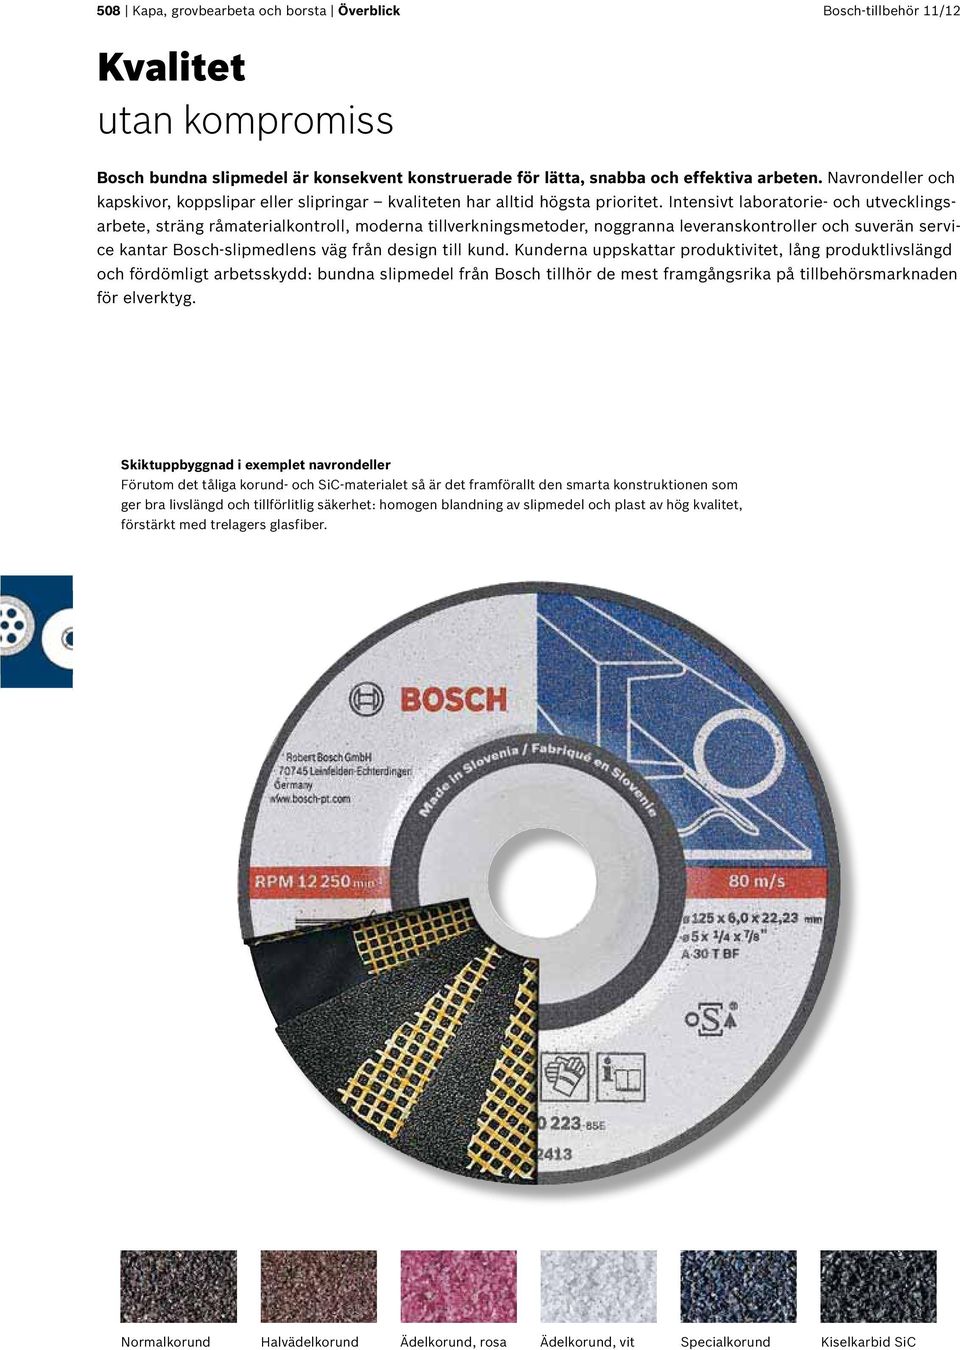 Intensivt laboratorie- och utvecklingsarbete, sträng råmaterialkontroll, moderna tillverkningsmetoder, noggranna leveranskontroller och suverän service kantar Bosch-slipmedlens väg från design till